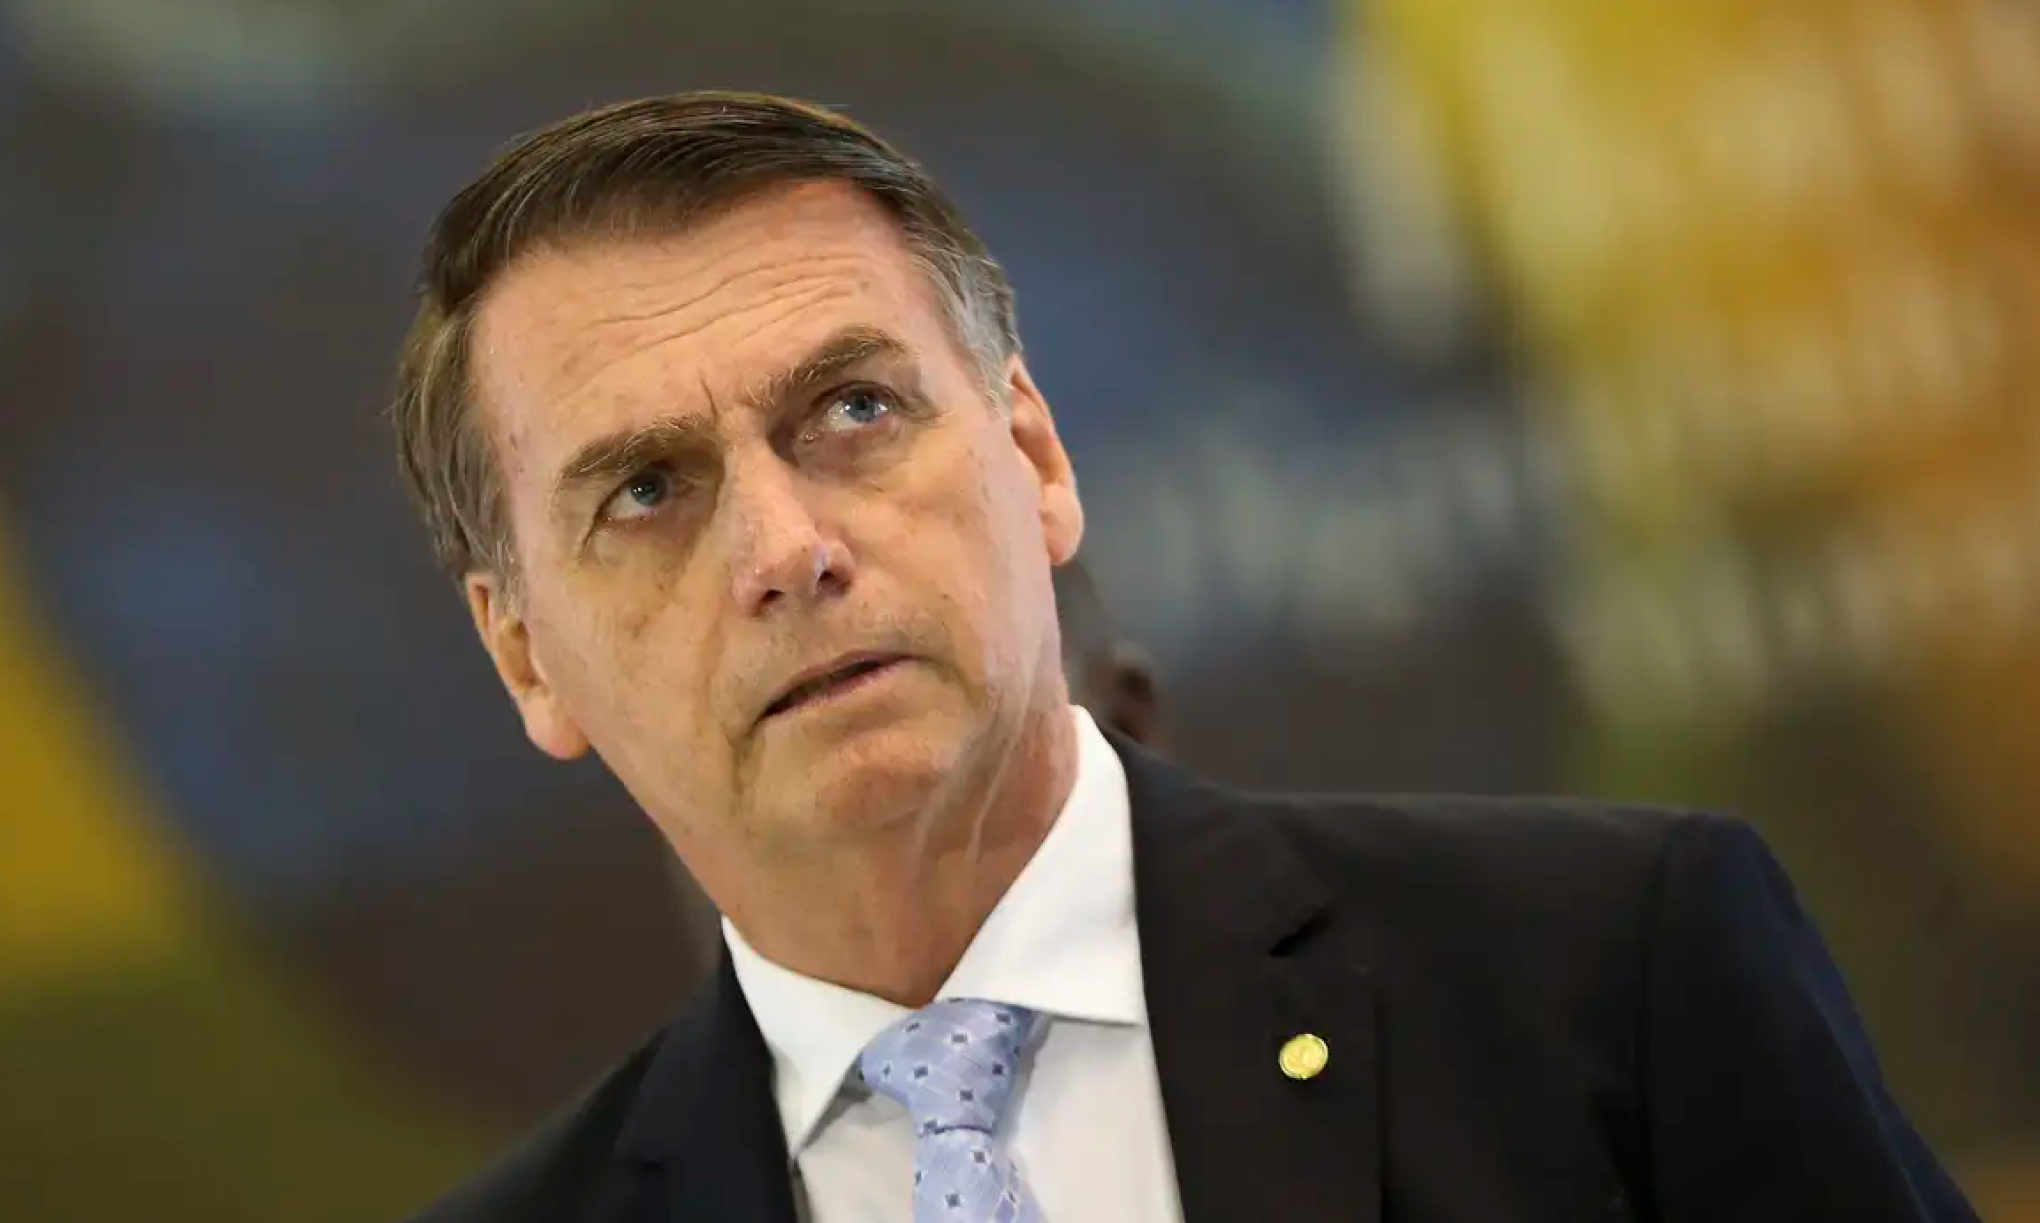 Saiba quais são os próximos passos após indiciamento de Bolsonaro no caso das joias